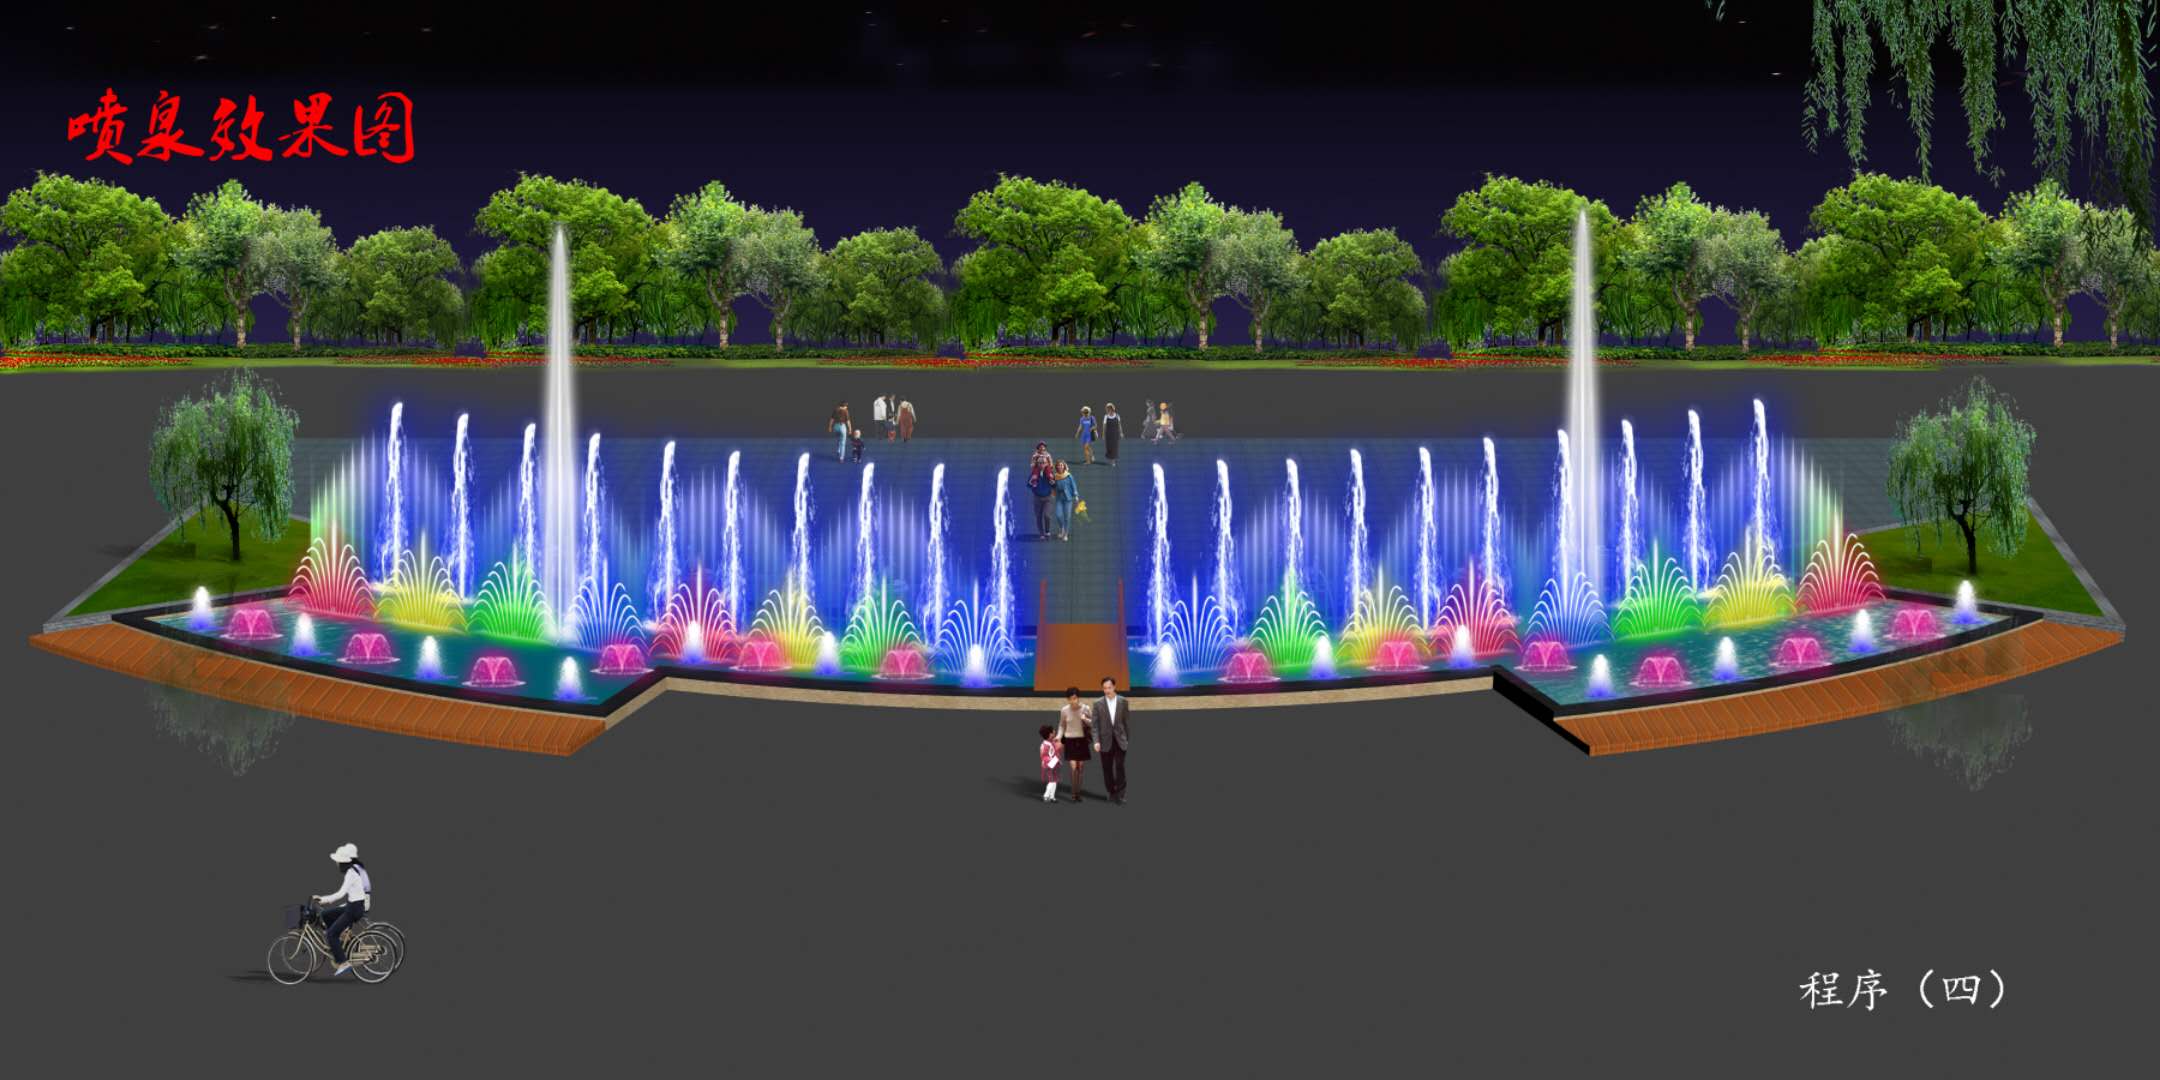 整套音乐喷泉设备 小型音乐喷泉 喷泉景观配件 全套喷泉制作安装